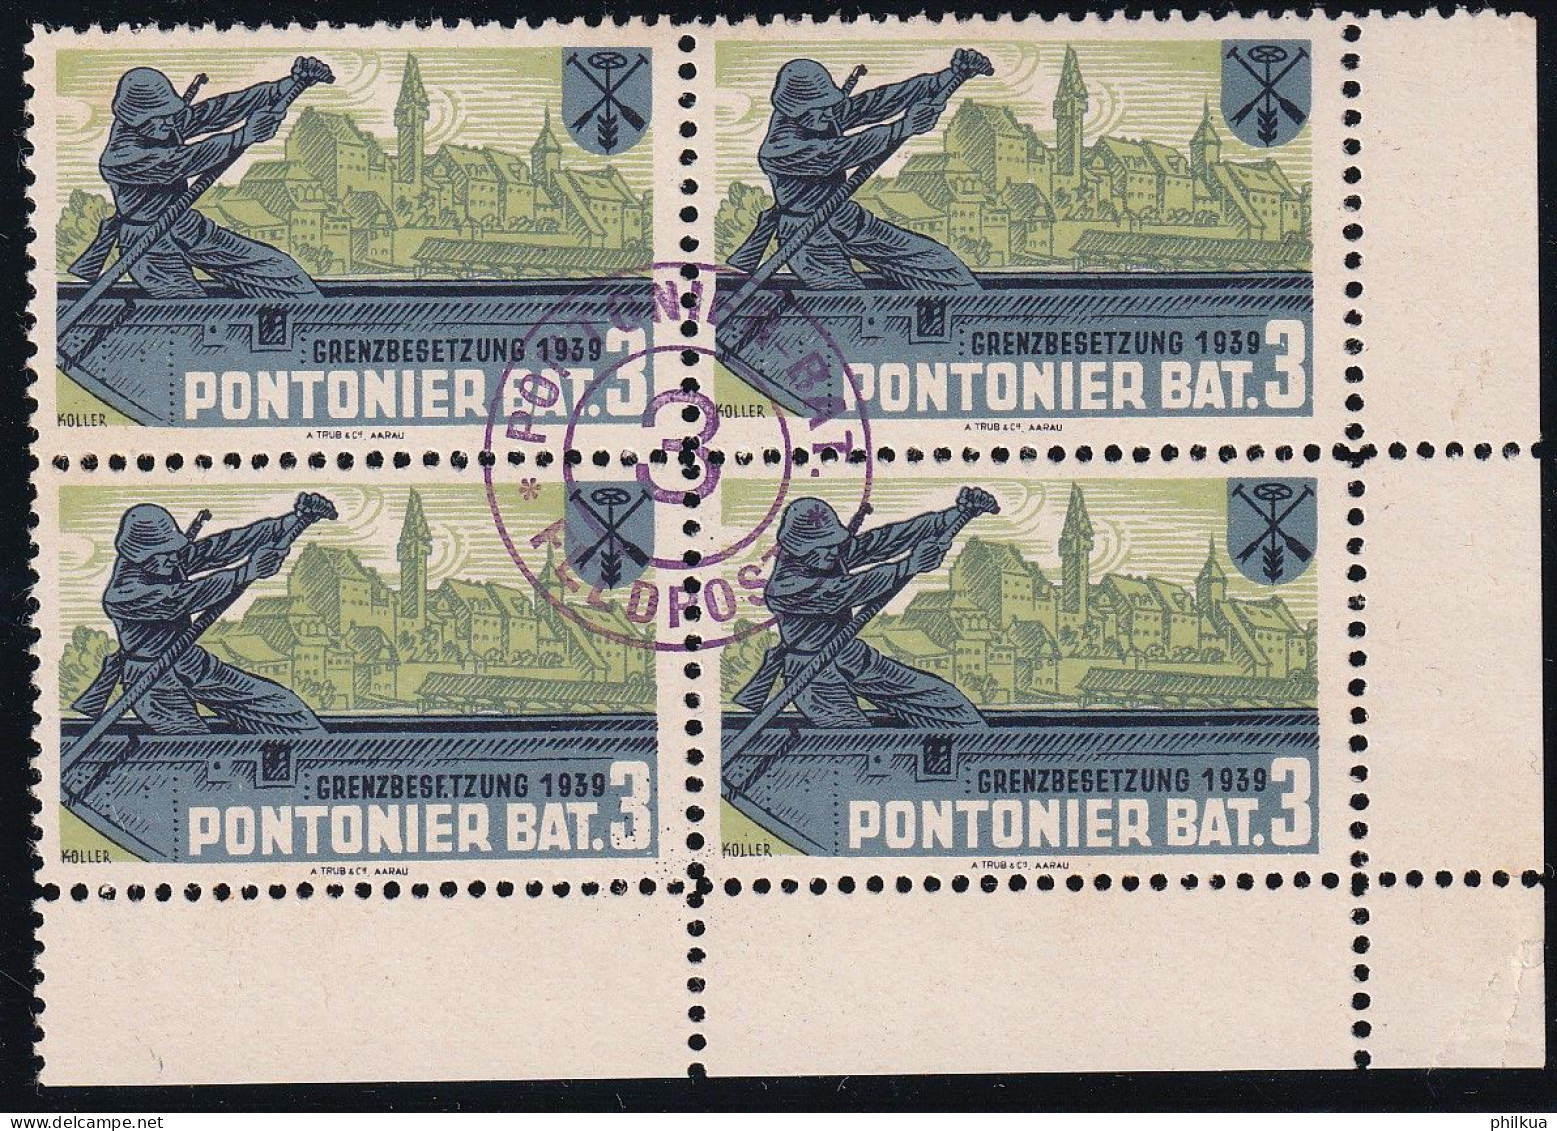 Pontoniere 27 Gezähnter Vierer Block - Pontonier Bat. 3 - Mit Truppemstempel - Postfrisch/**/MNH - Vignettes